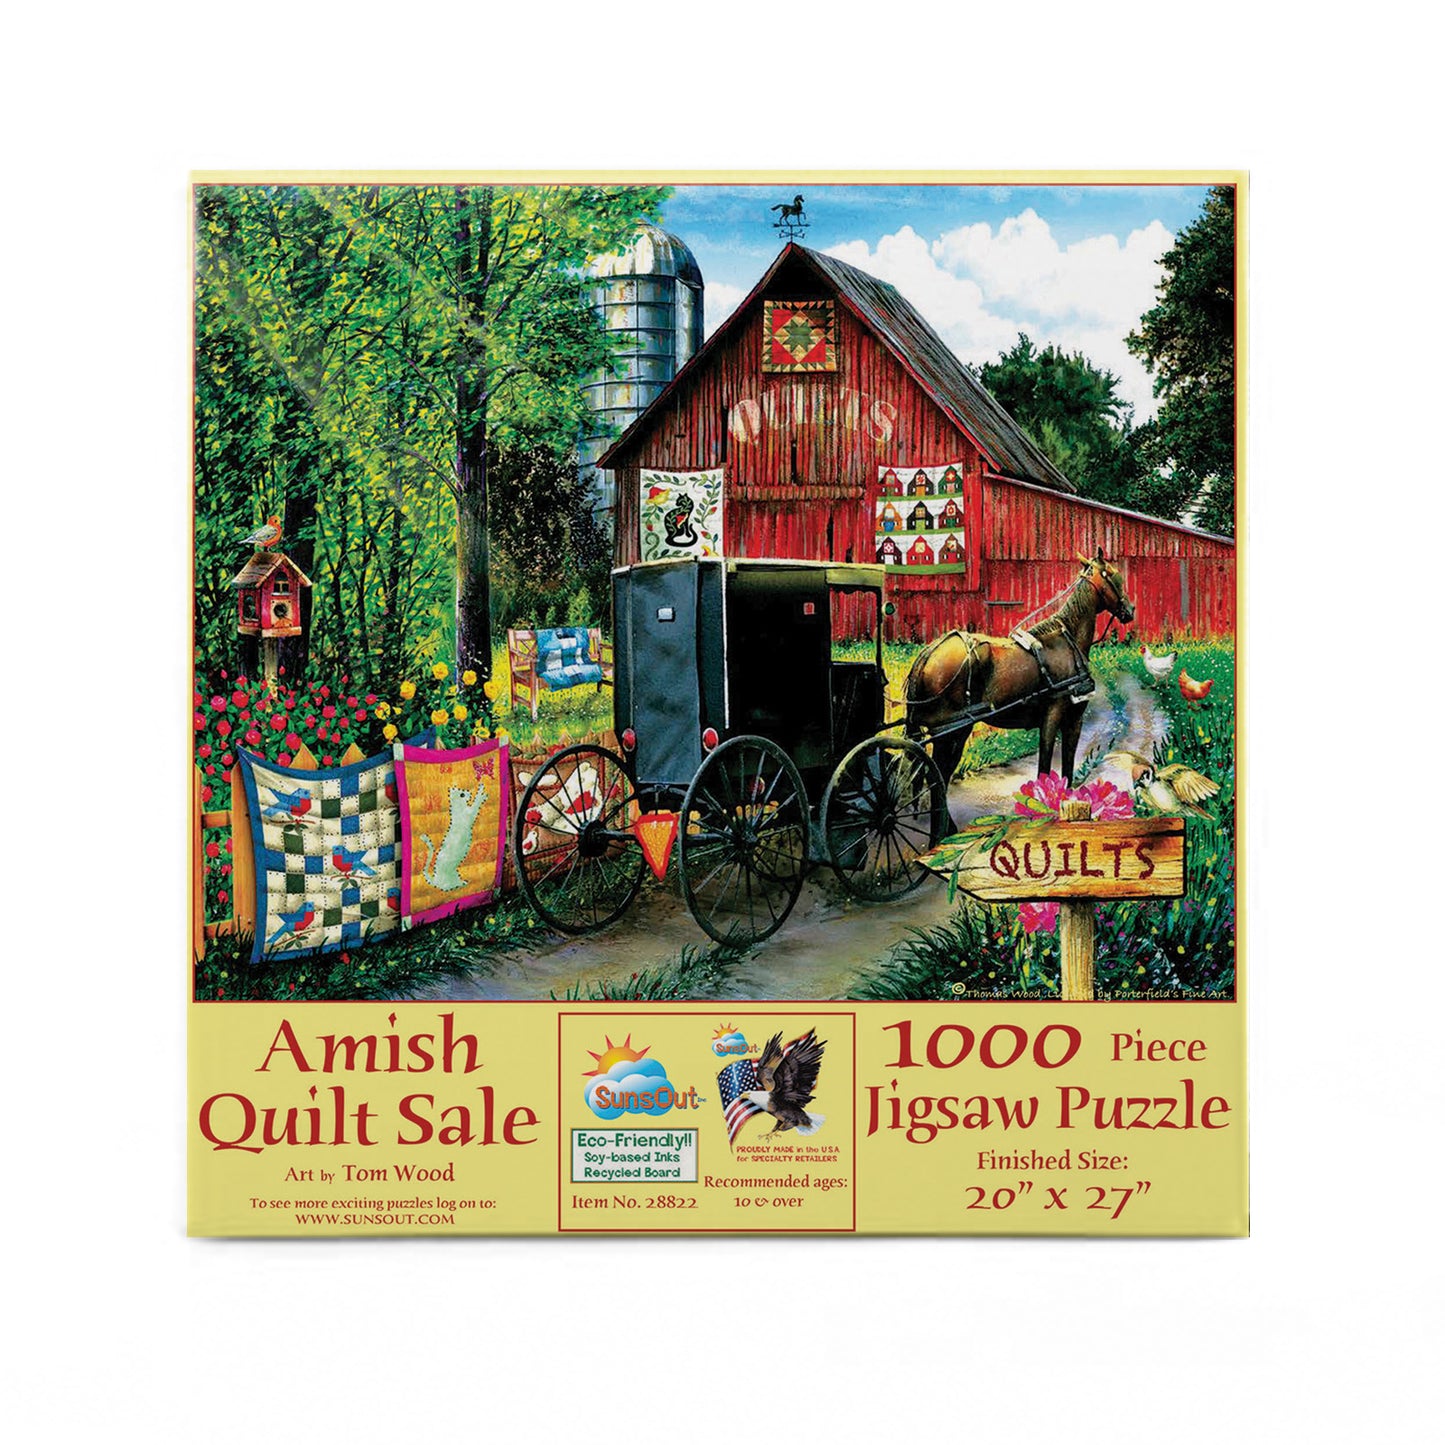 Amish Quilt Sale - 1000 Piece Jigsaw Puzzle